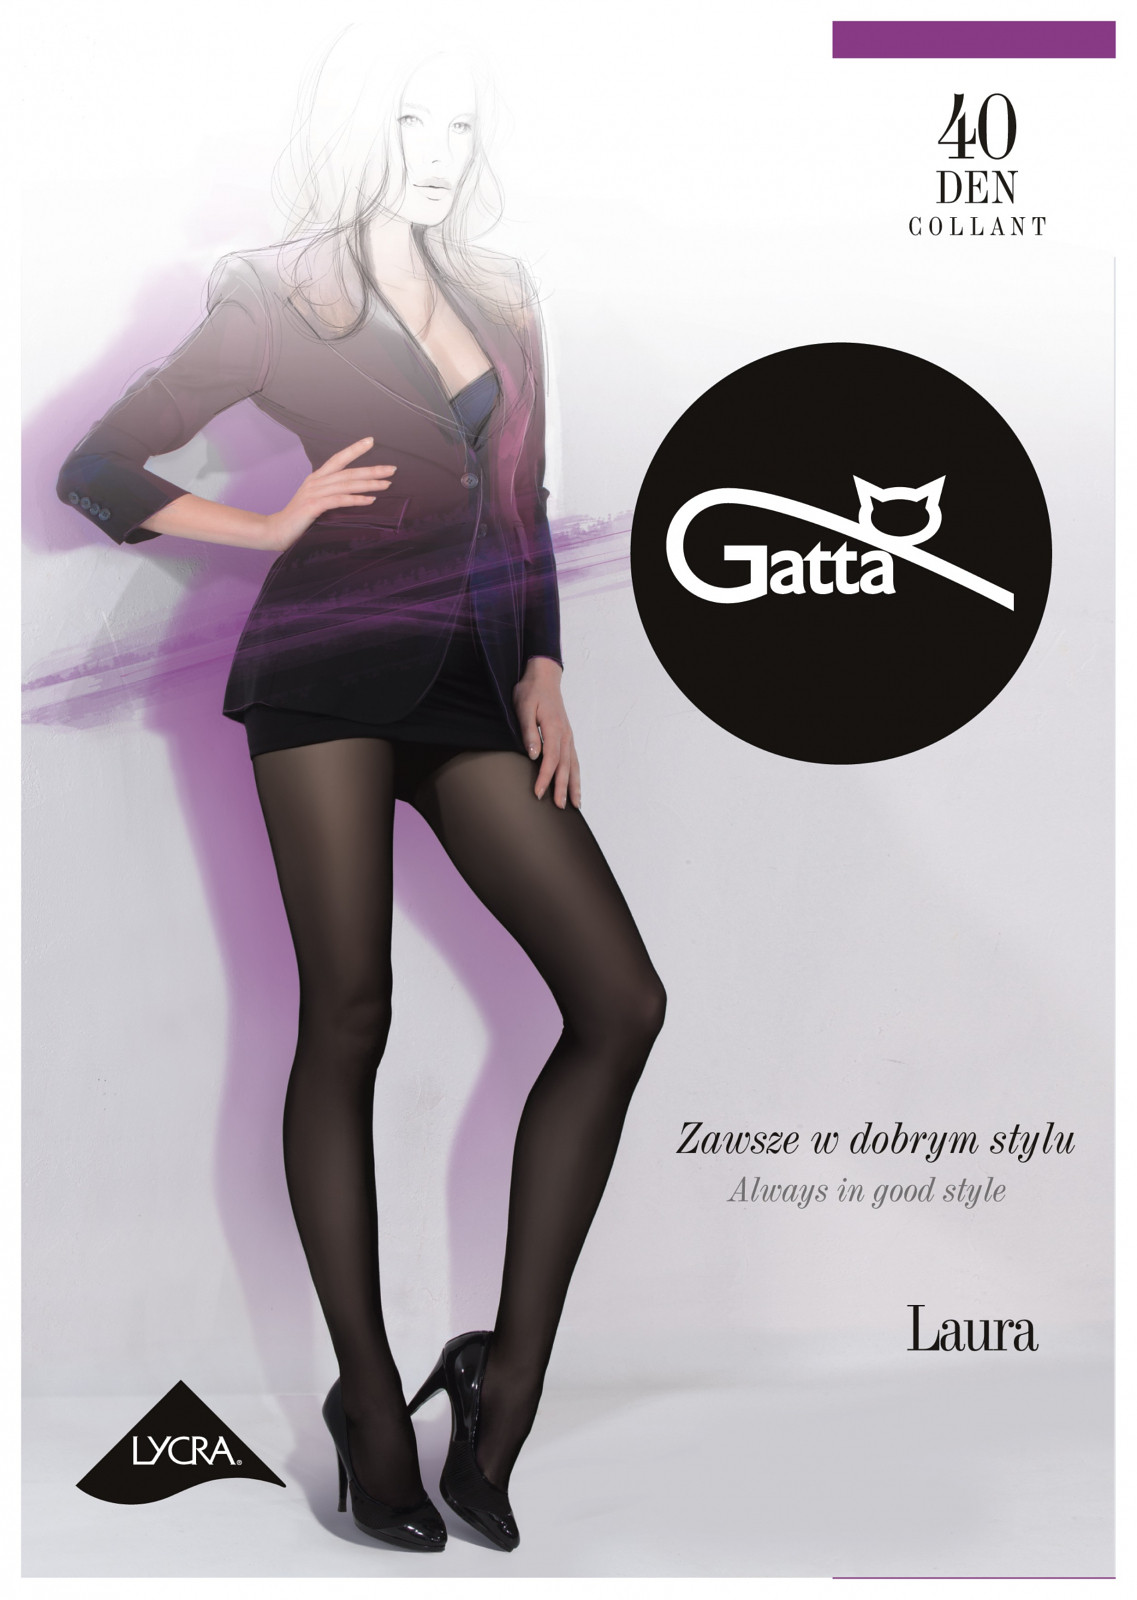 Dámské punčochové kalhoty Gatta| Laura 40 den daino/odc.béžová 2-S